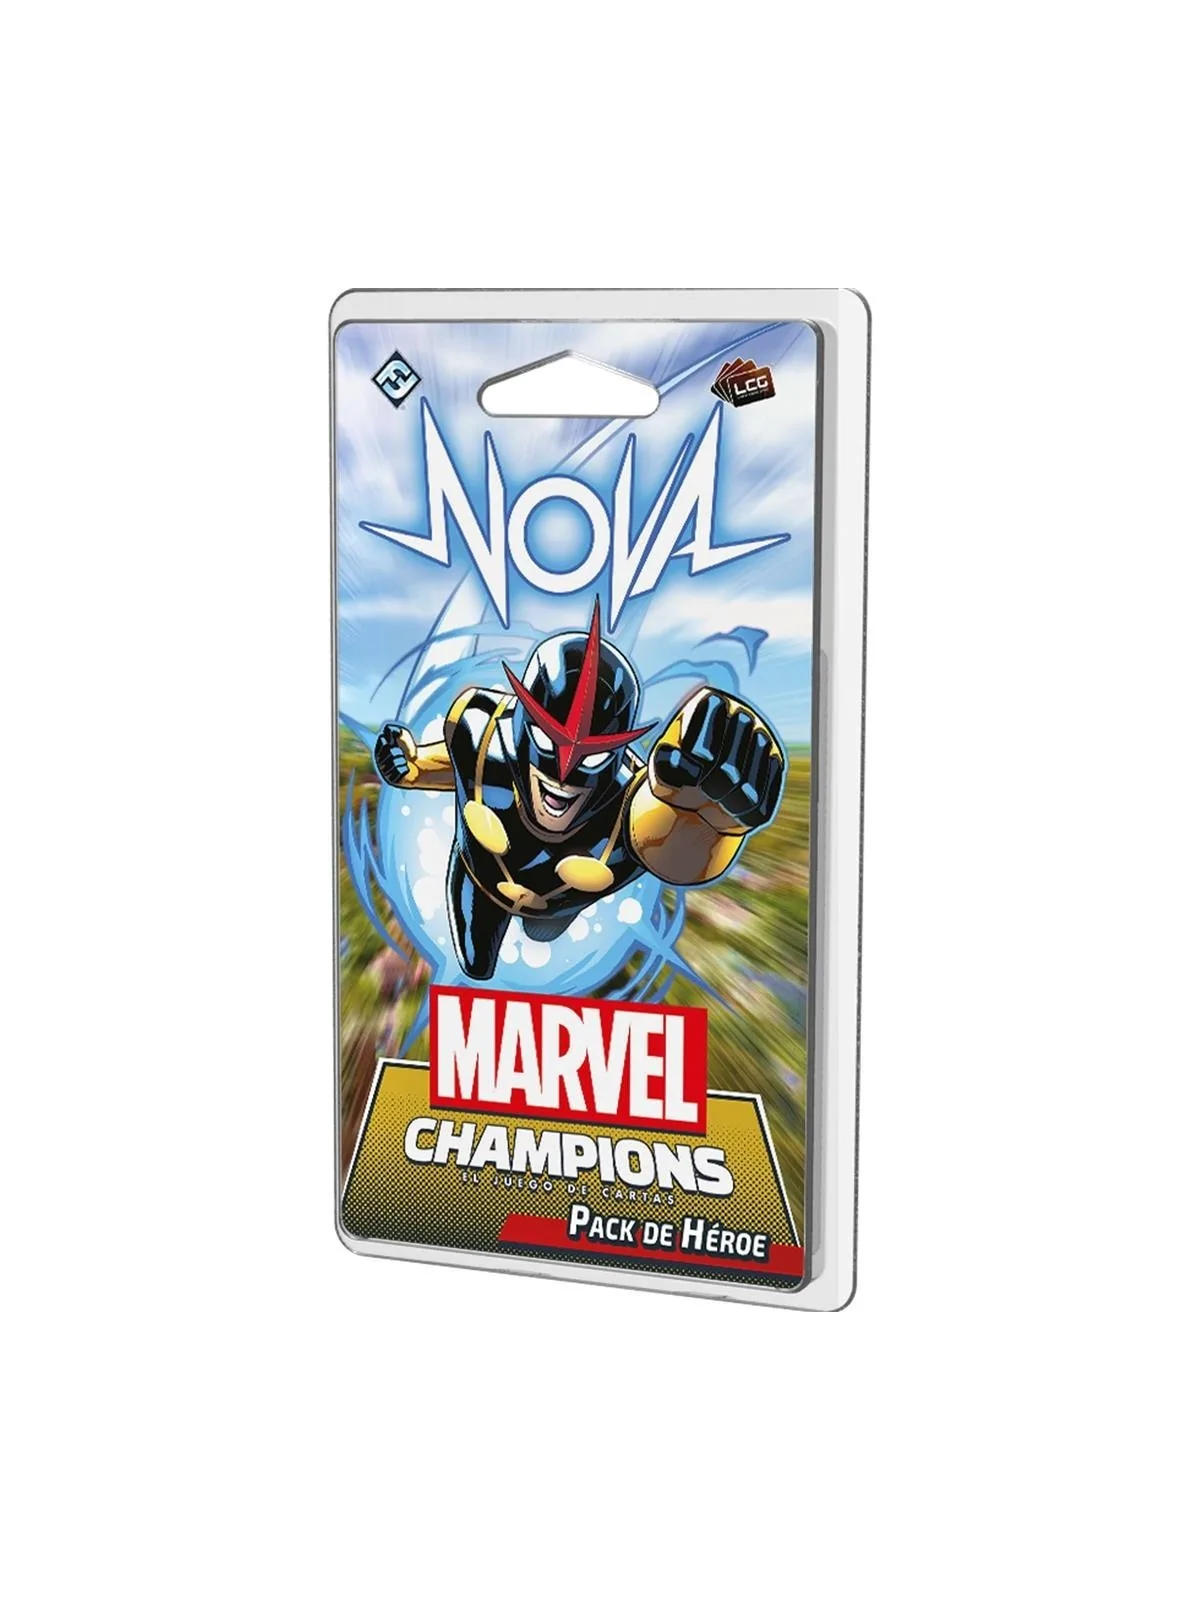 Comprar Nova barato al mejor precio 15,29 € de Fantasy Flight Games